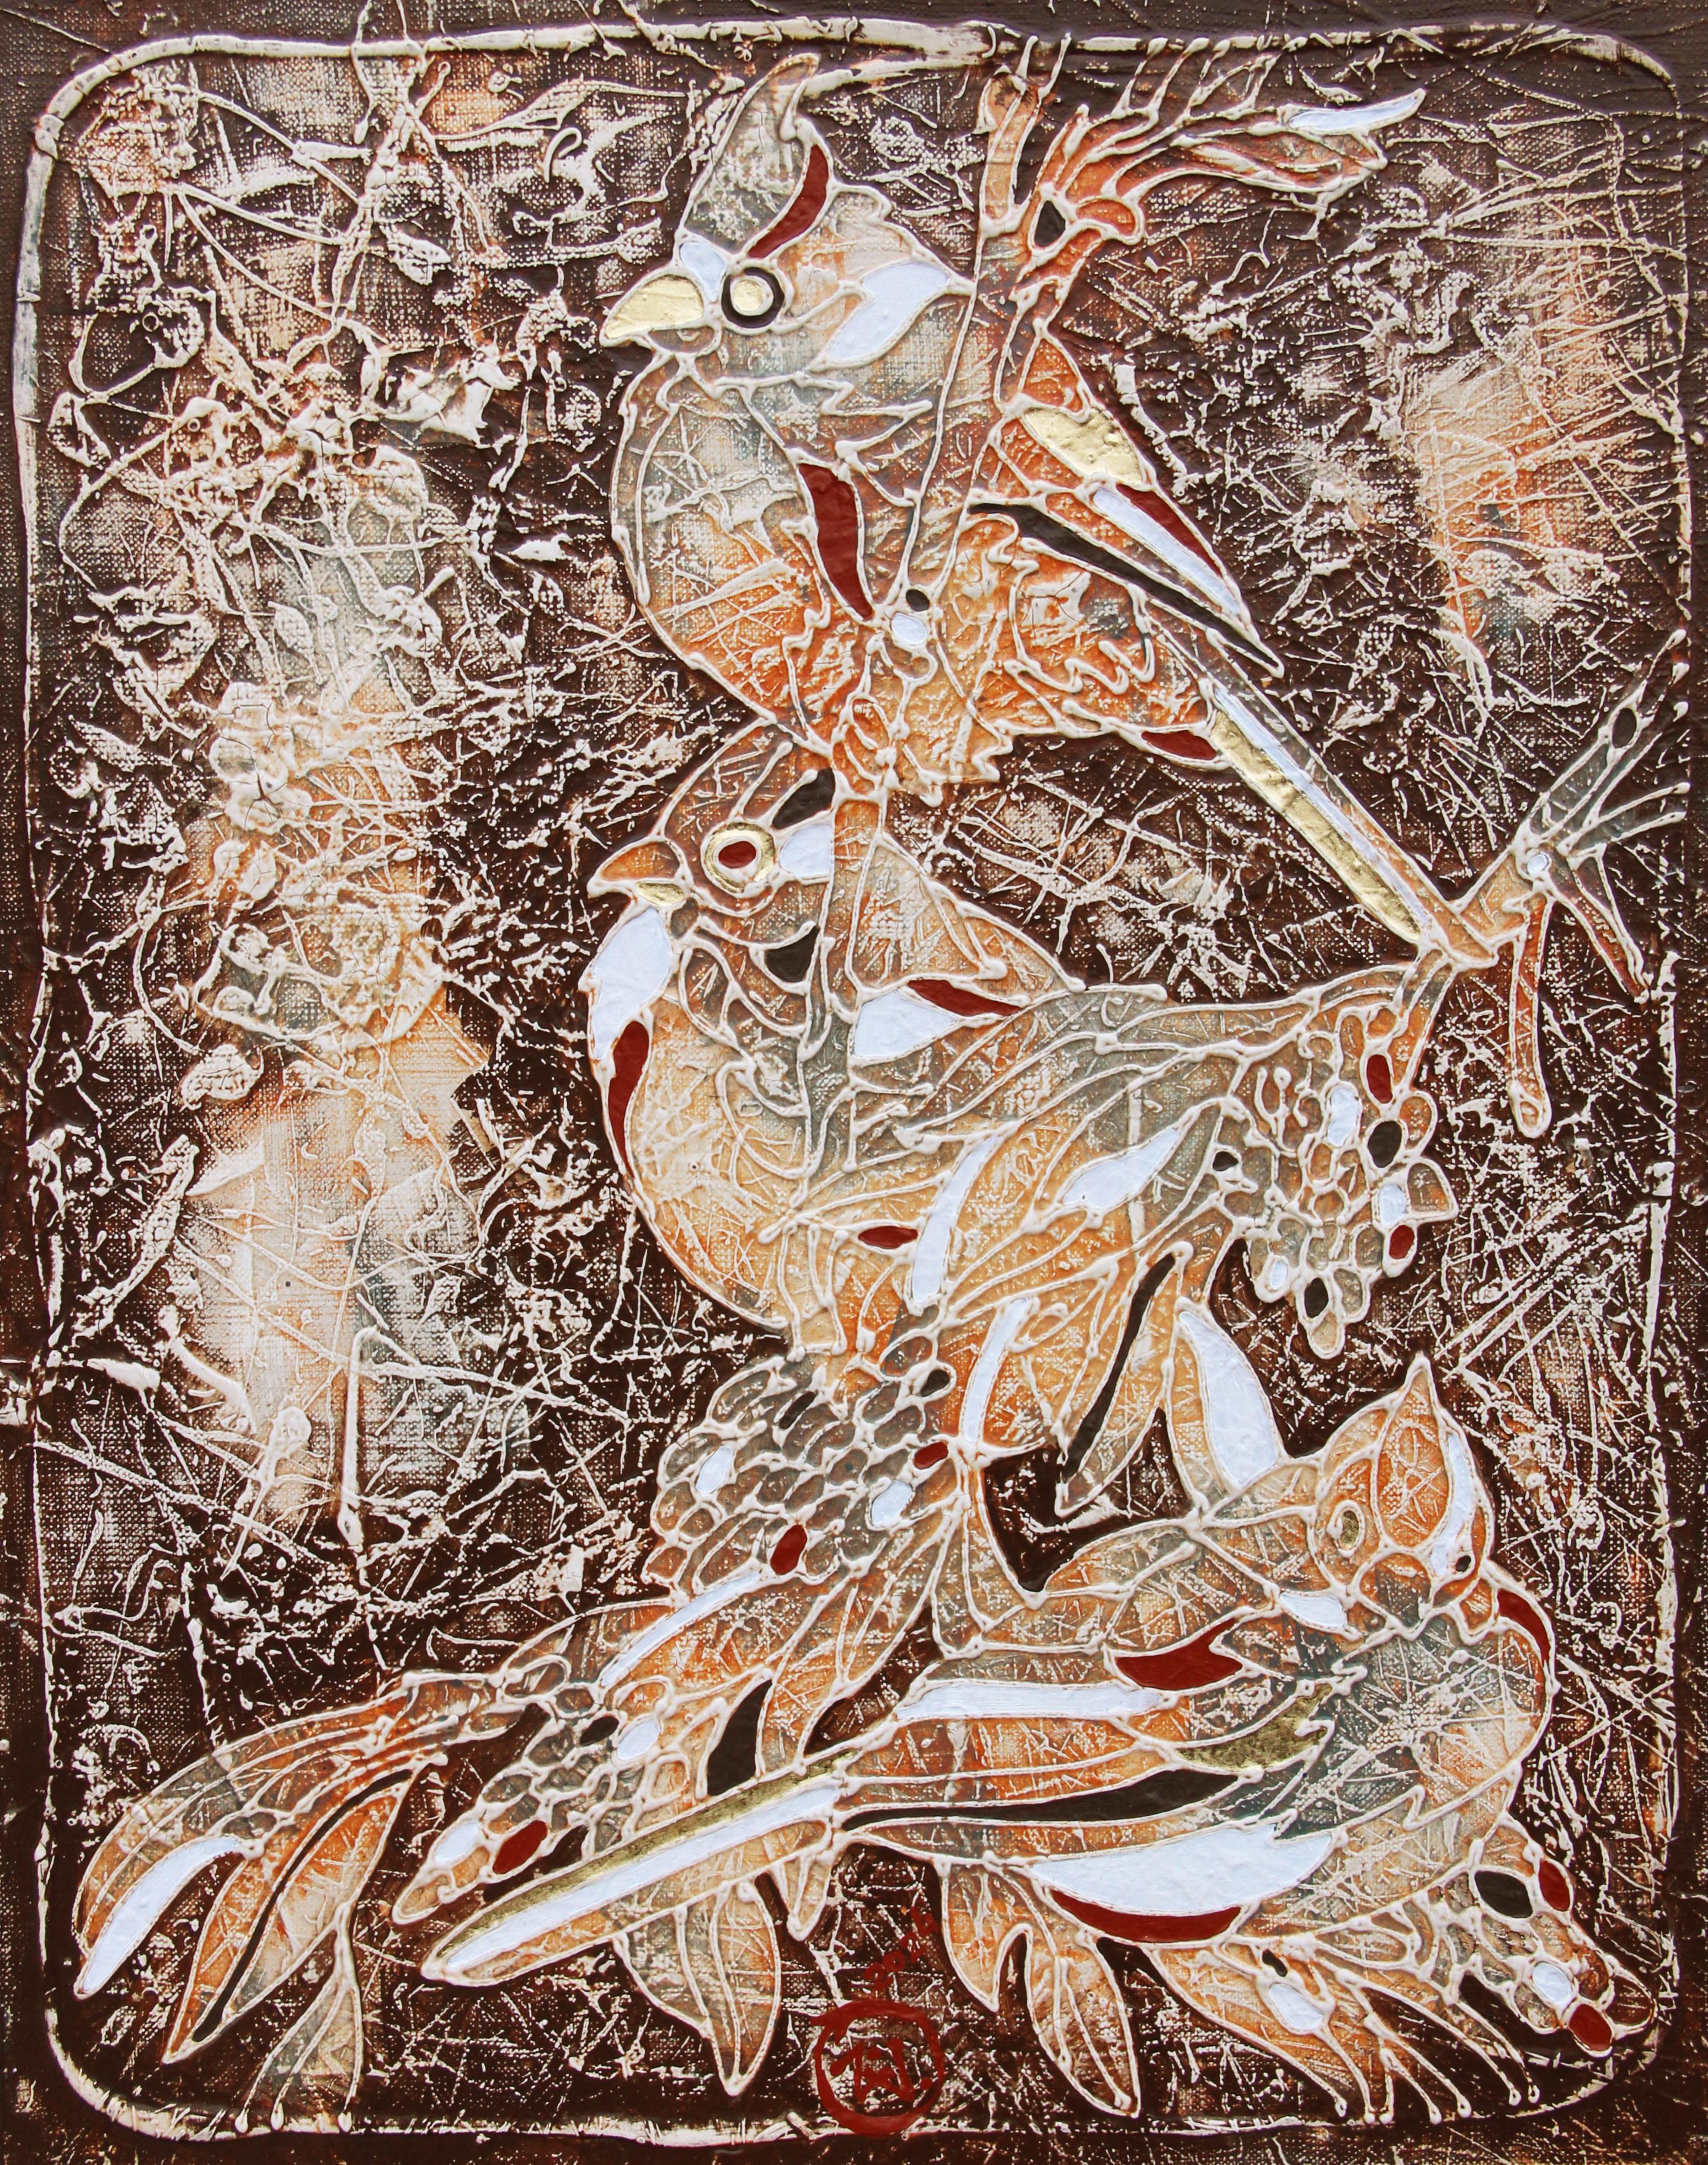 La peinture est réalisée selon la technique de l'auteur, à savoir la peinture acrylique sur toile à base de Vasily Vasko, en utilisant une variété de textures, de lavis, de glacis les plus fins, de contours volumétriques lisibles au toucher pour les